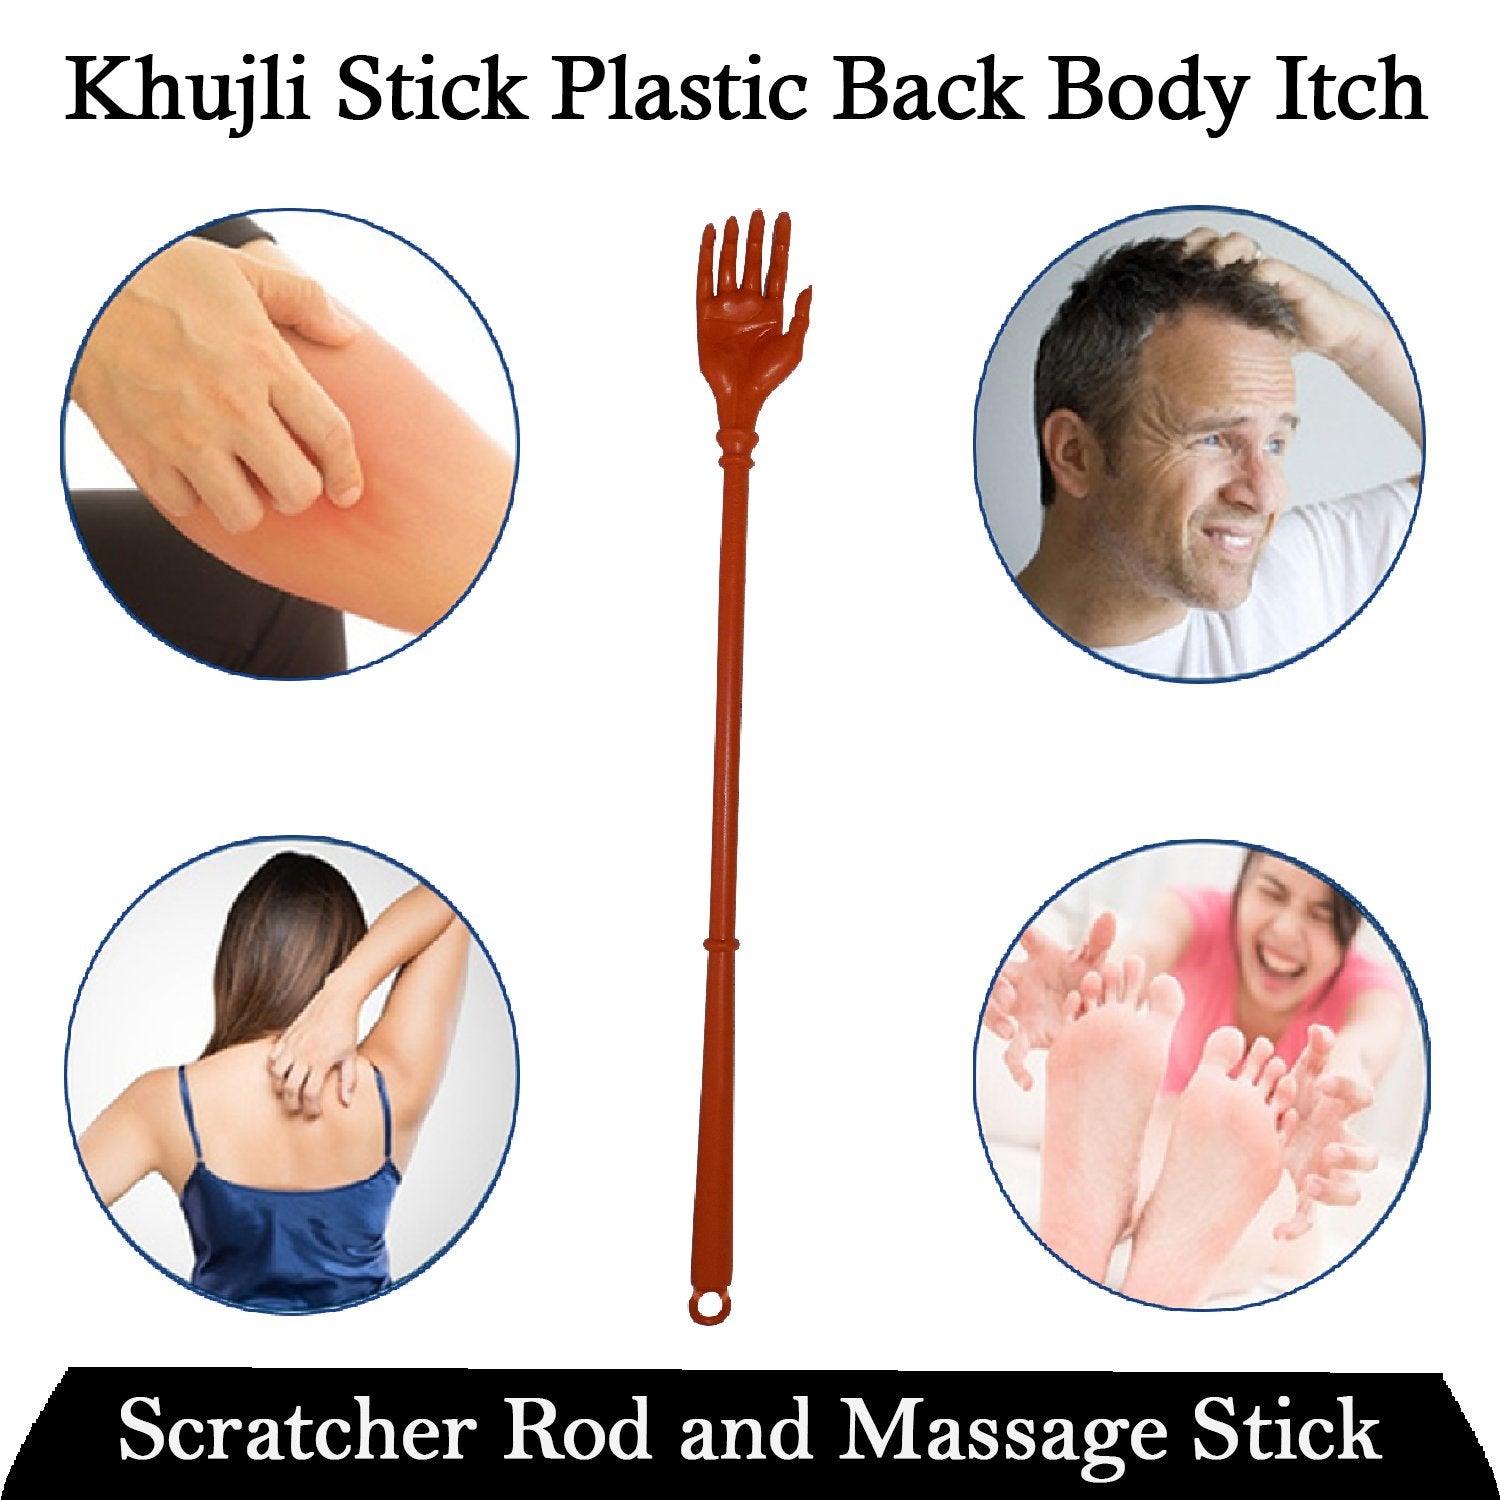 1463 Khujli Stick Plastic Back Body Itch Scratcher Rod and Massage Stick - SkyShopy